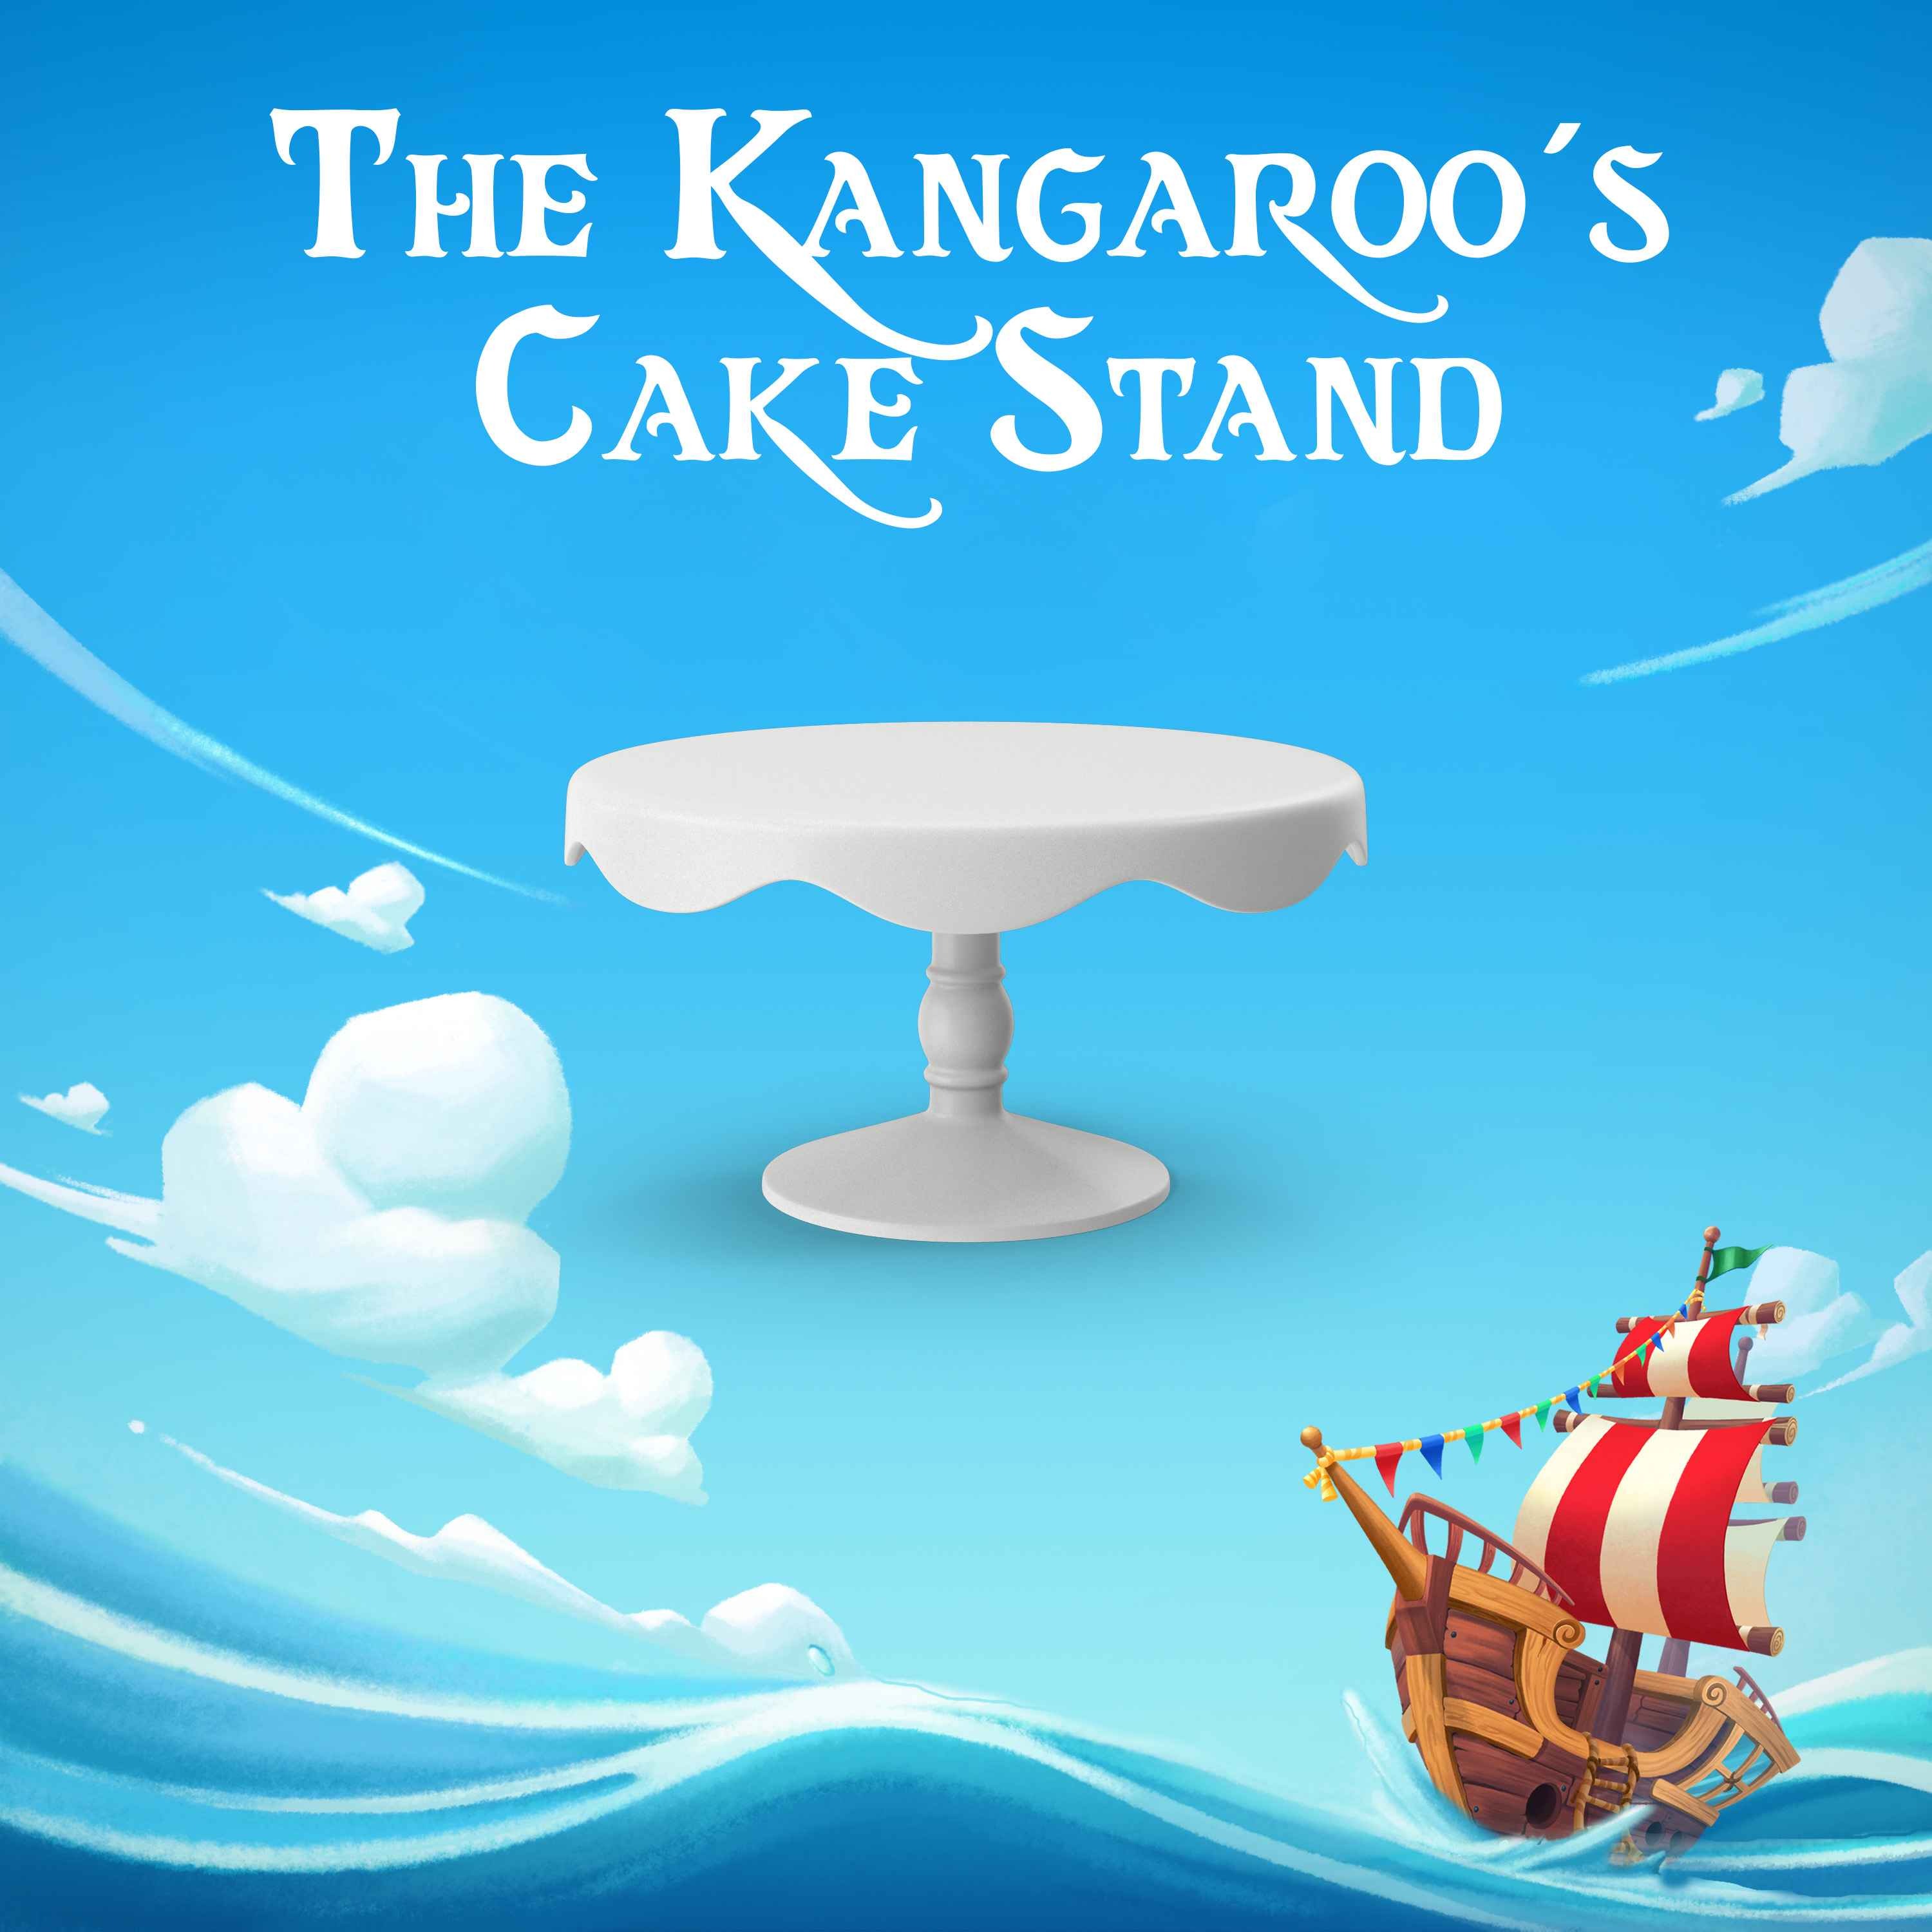 The Kangaroo's Cake Stand